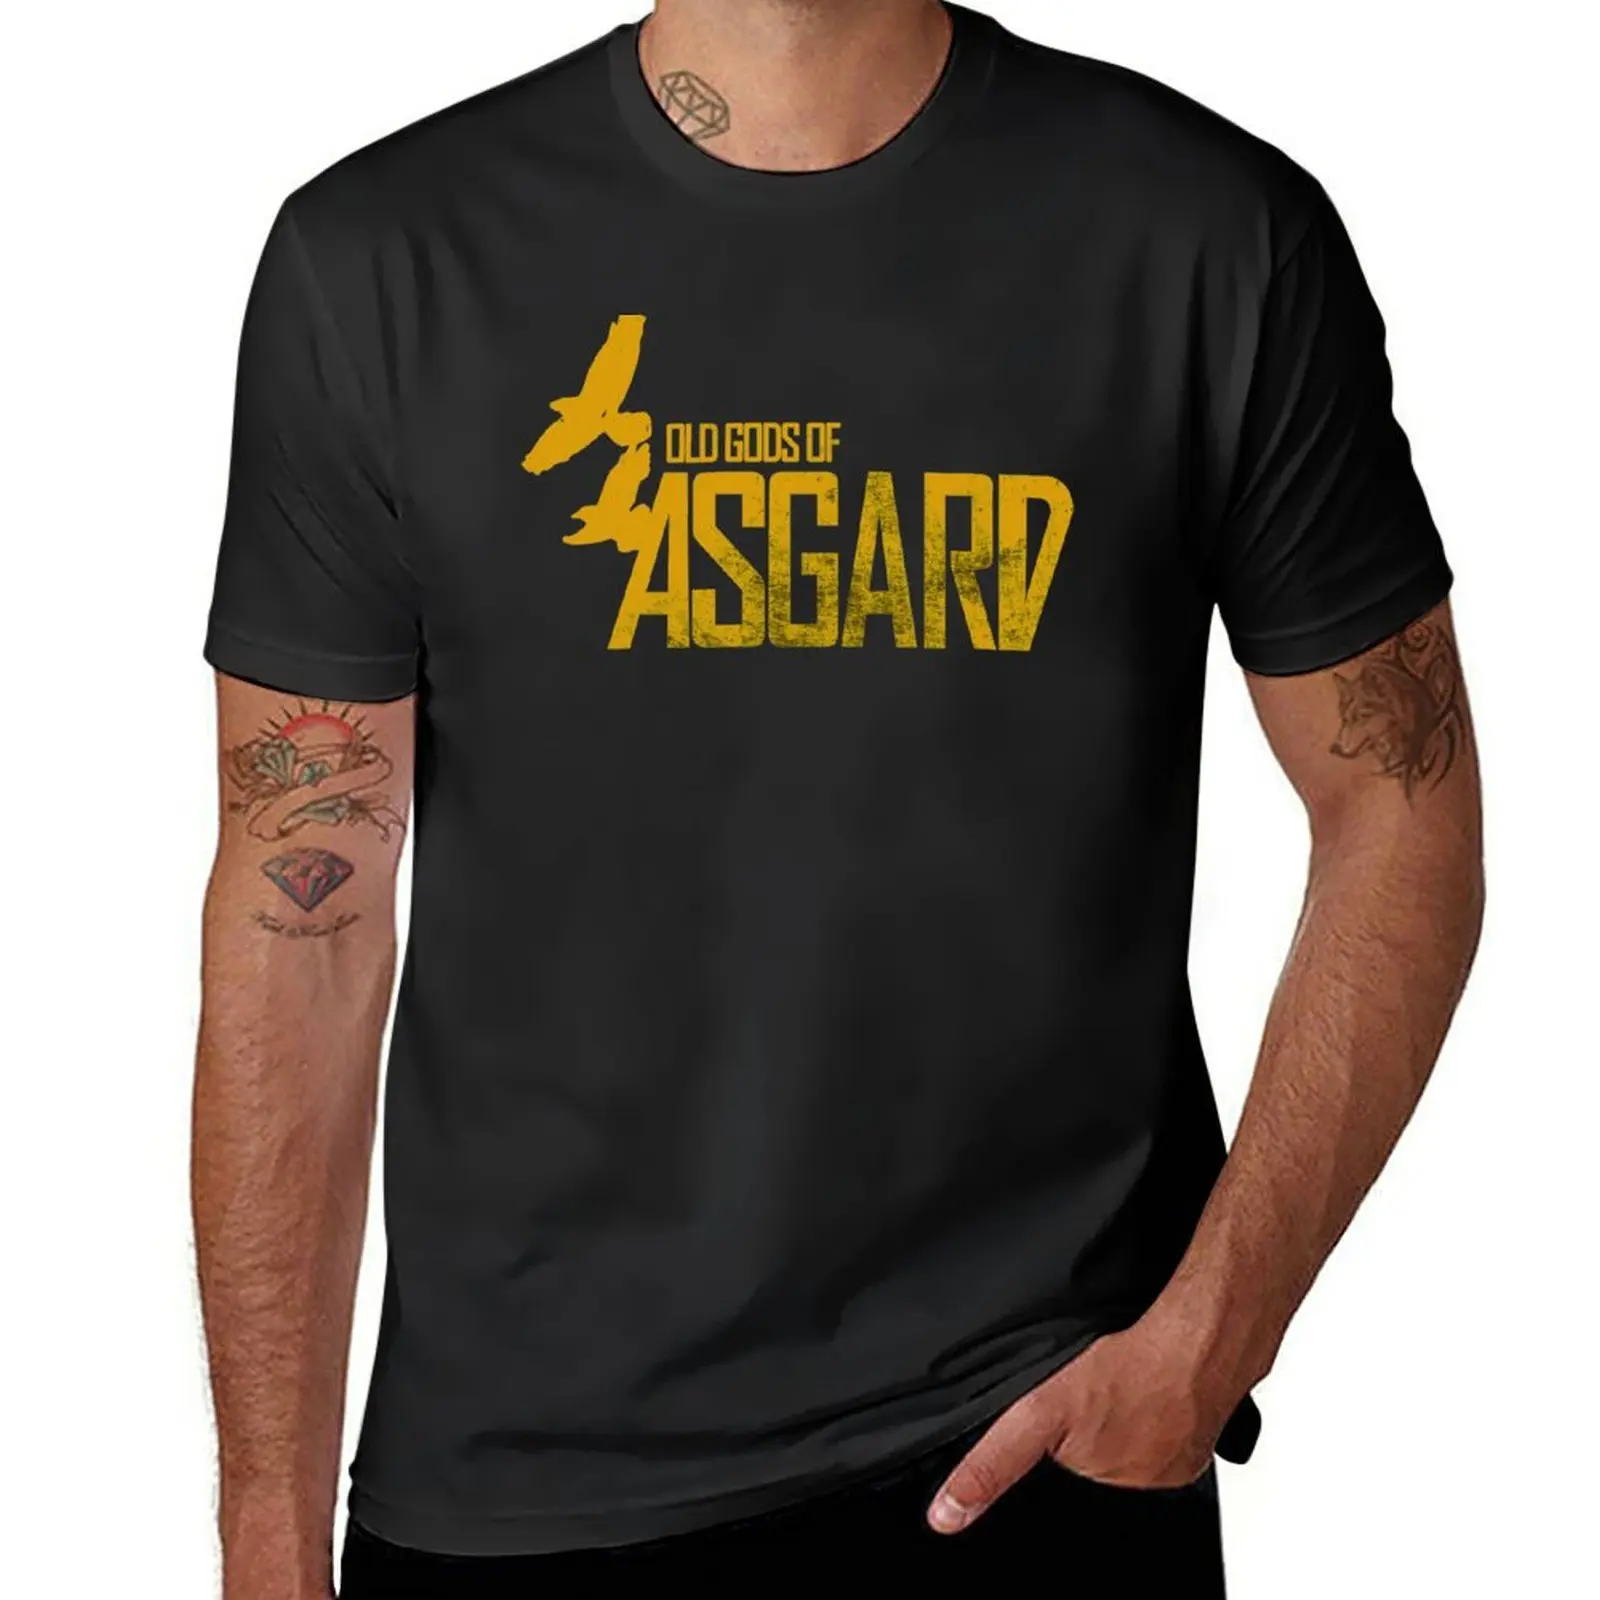 Футболка группы Old Gods of Asgard, вдохновленная Аланом Уэйком, мужская футболка, короткие однотонные футболки, мужские футболки